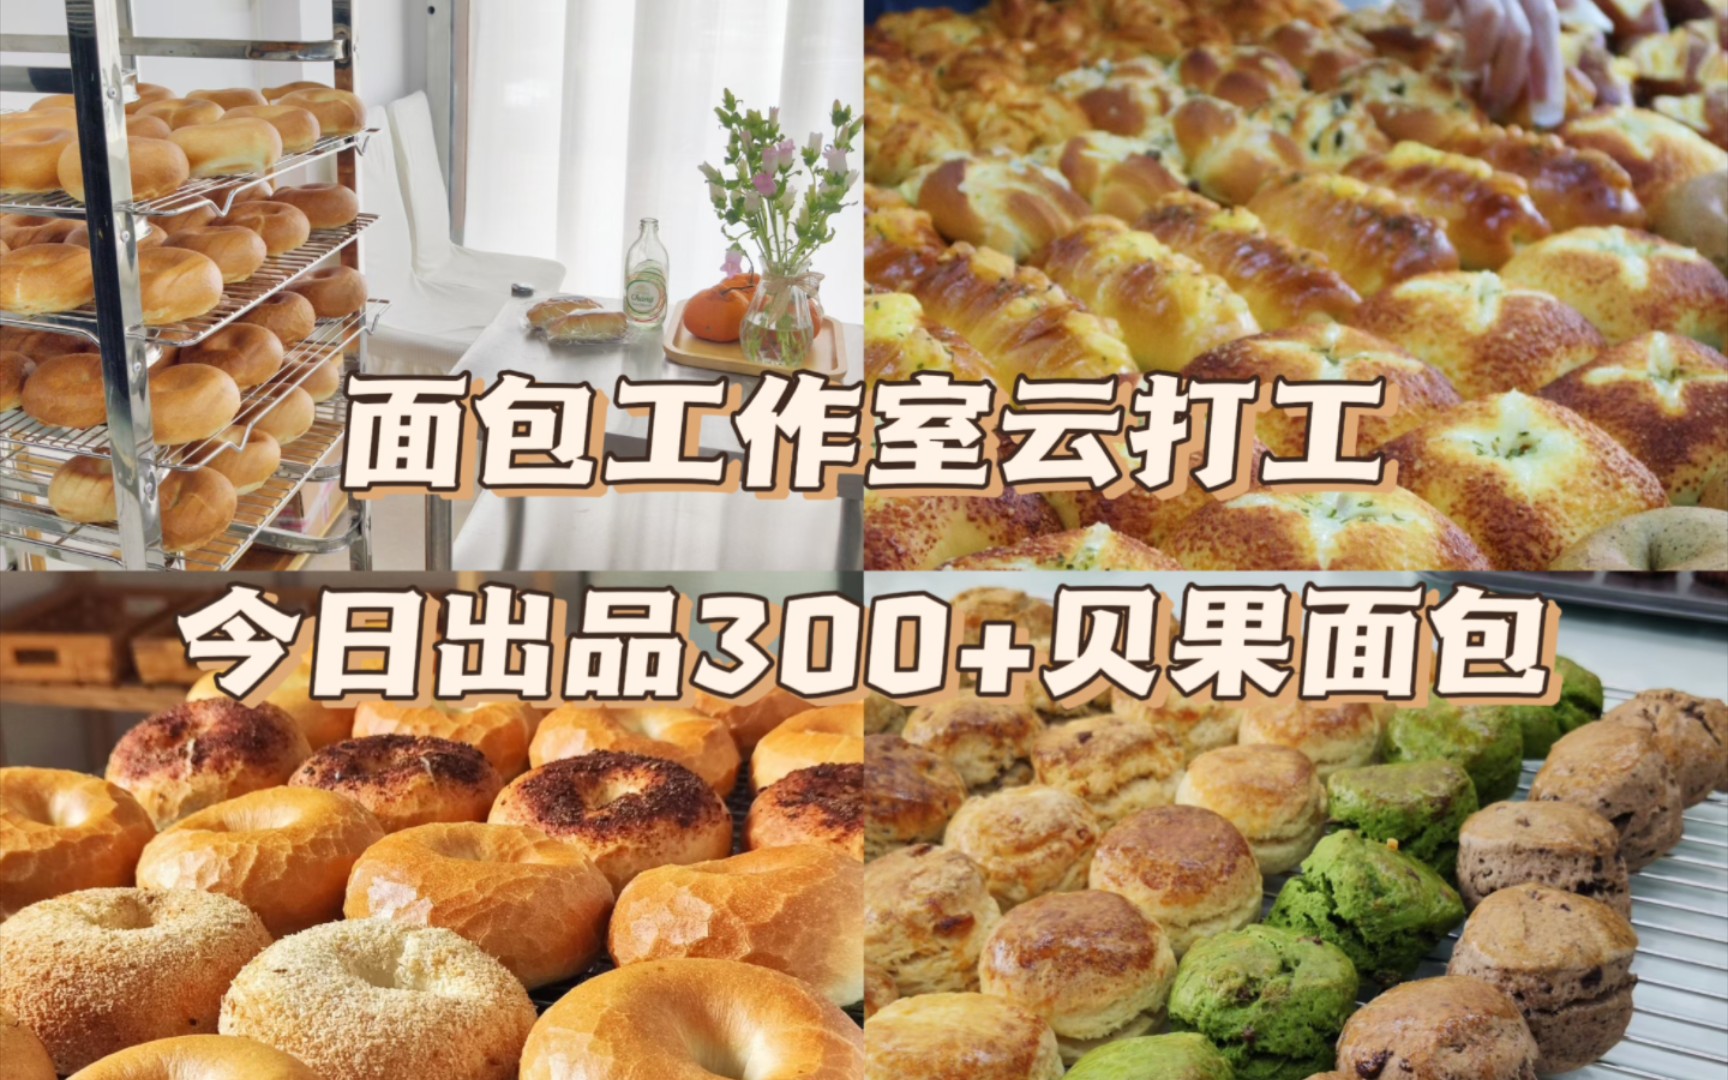 無野铺子｜面包工作室云打工Vlog｜井条有序的面包一天日常｜今日出品300+面包